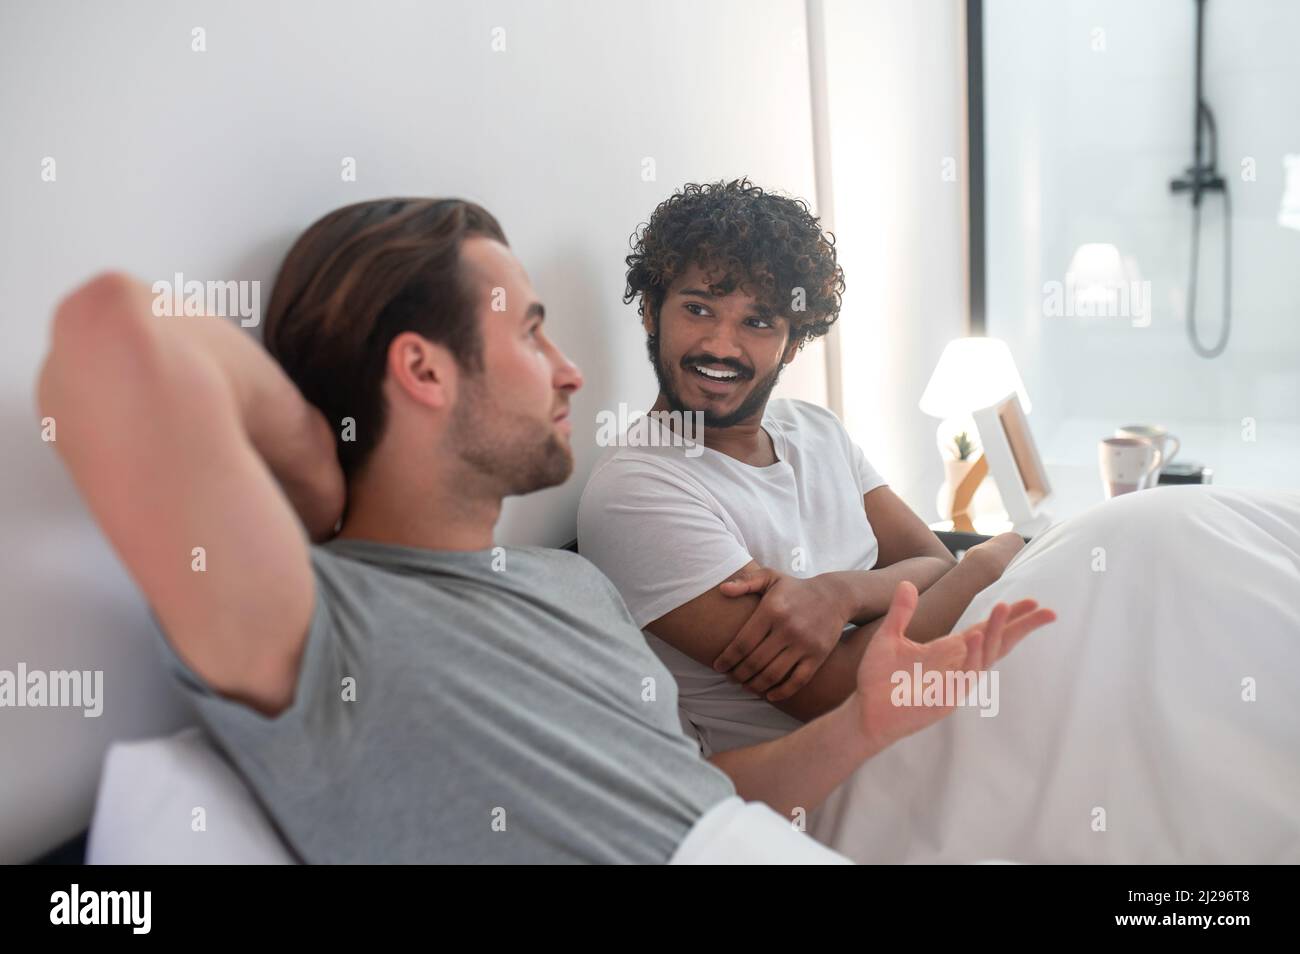 Joyeux homme regardant son petit ami pendant leur conversation intime Banque D'Images